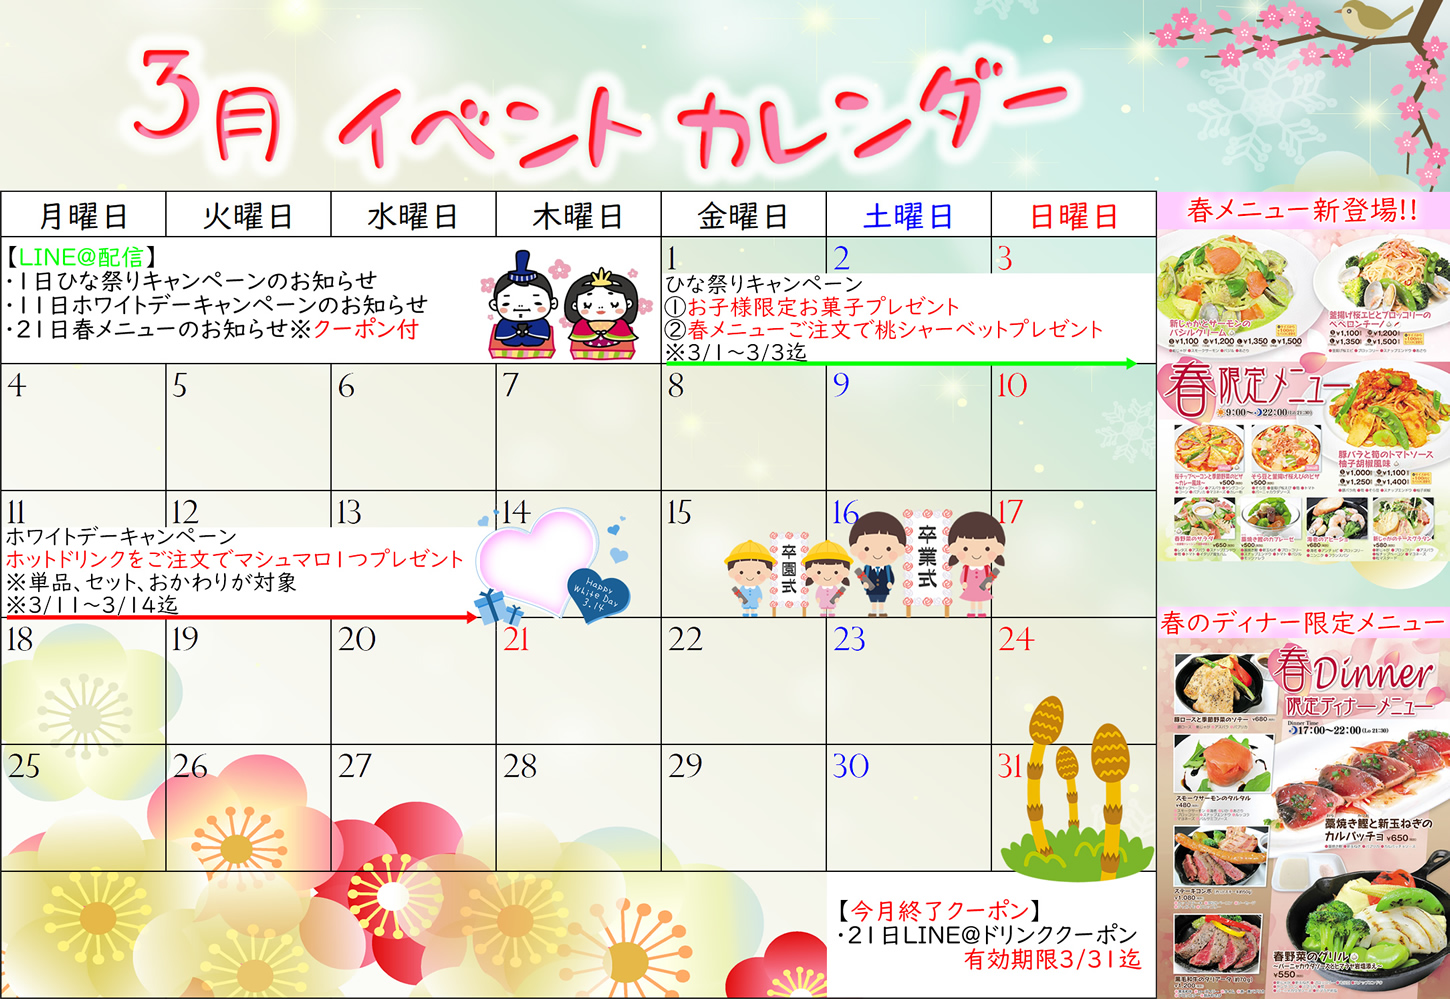 3月イベントカレンダー 埼玉県越谷市のビストロ